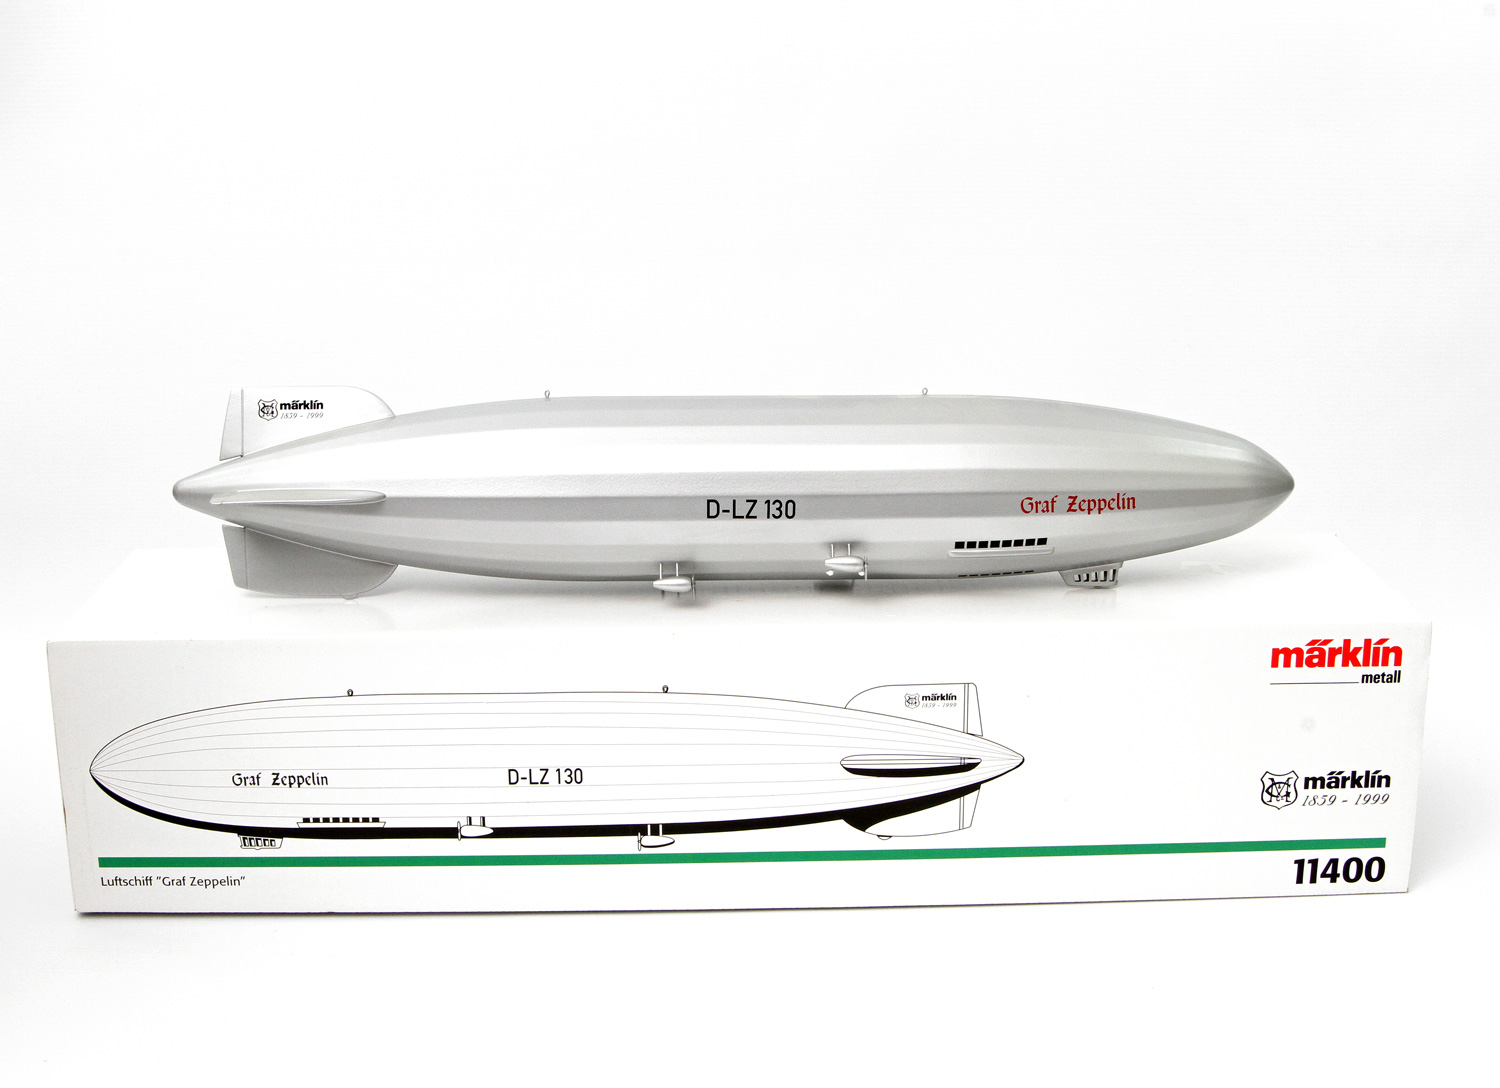 MÄRKLIN Luftschiff "Graf Zeppelin" 11400, einmalige Sonderserie für die MHI von 1999, Aufschrift "